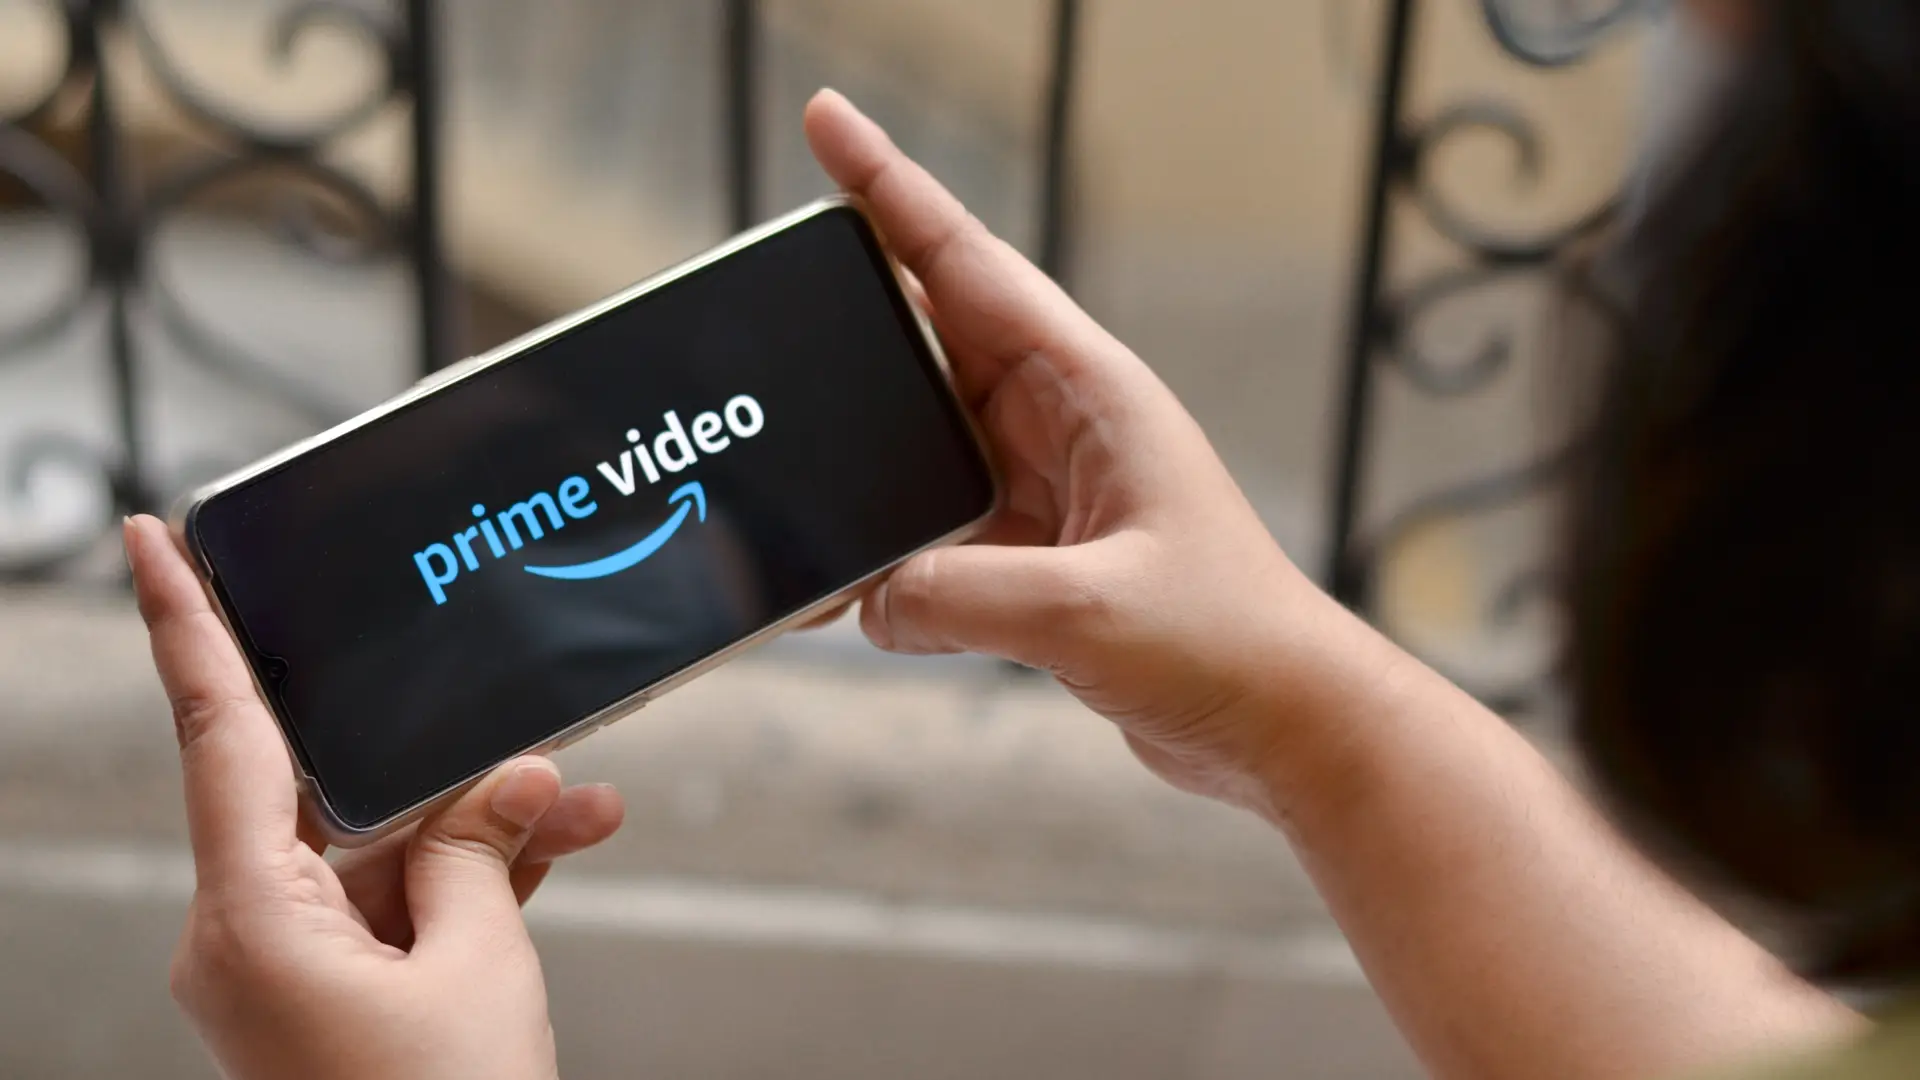 Manos de una persona sujetando un movil con el logo de prime video para hacer referencia a los dispositvos en los que se puede disfrutar